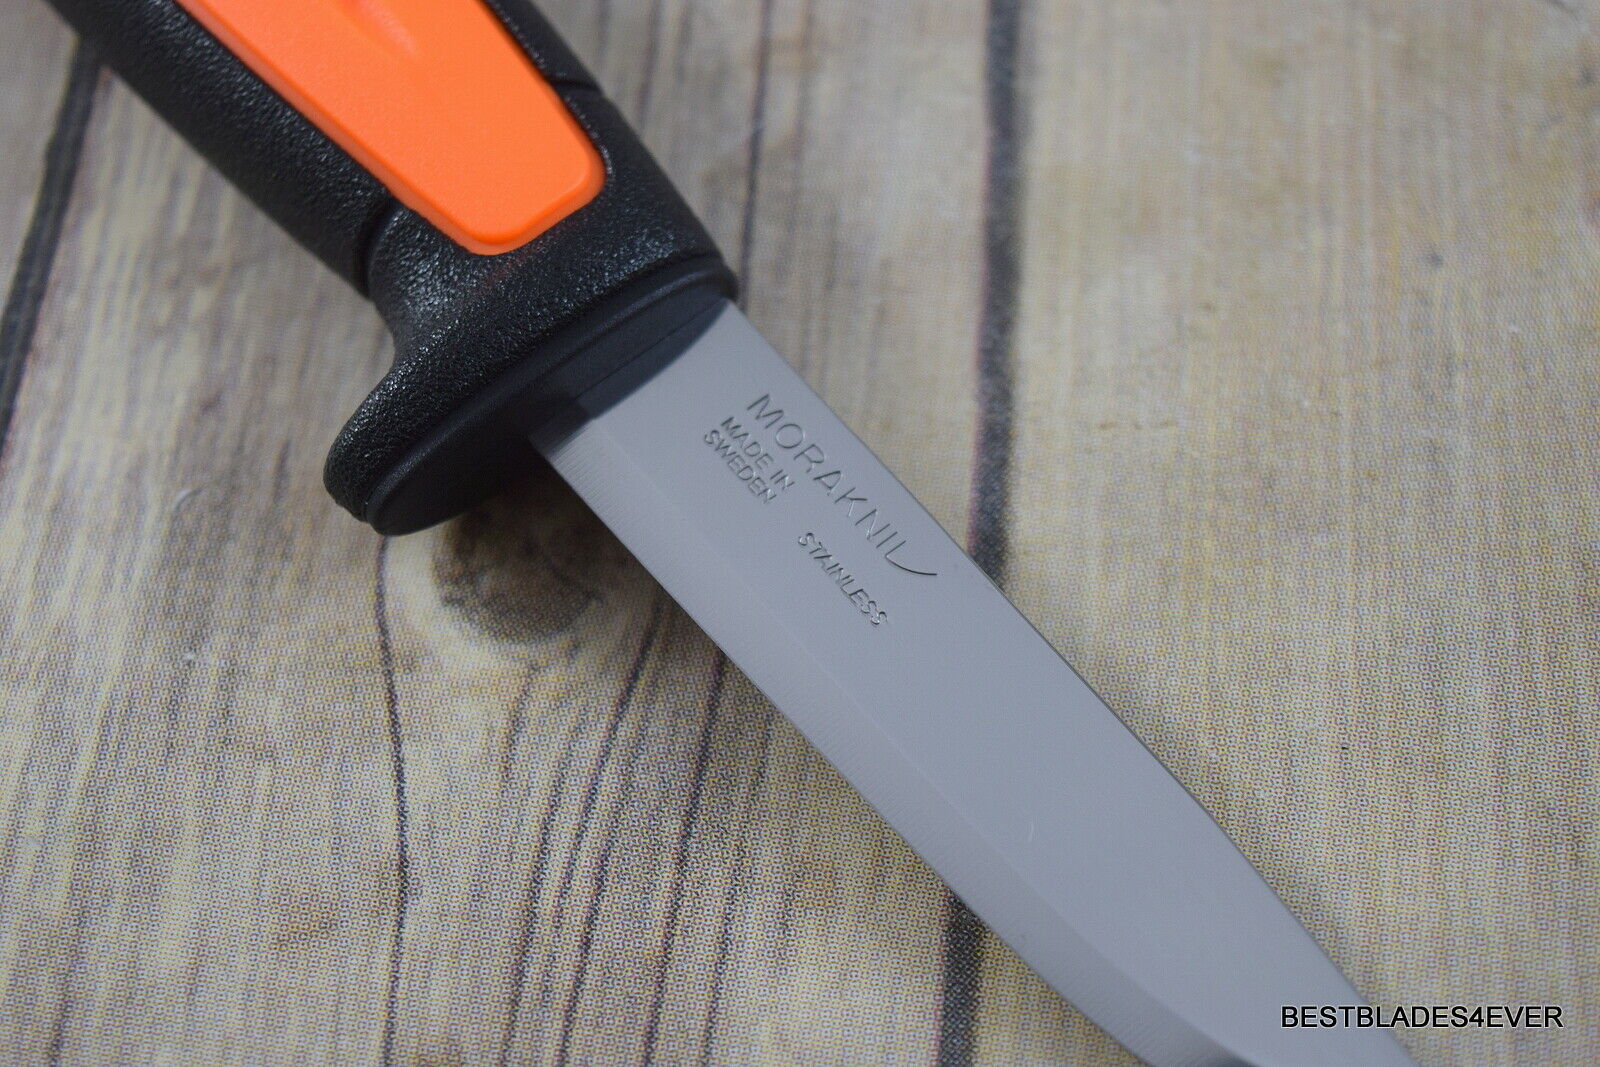 MORA BASIC 546 BLACK/ORANGE FIXED BLADE CAMPING KNIFE SWEDEN MADE